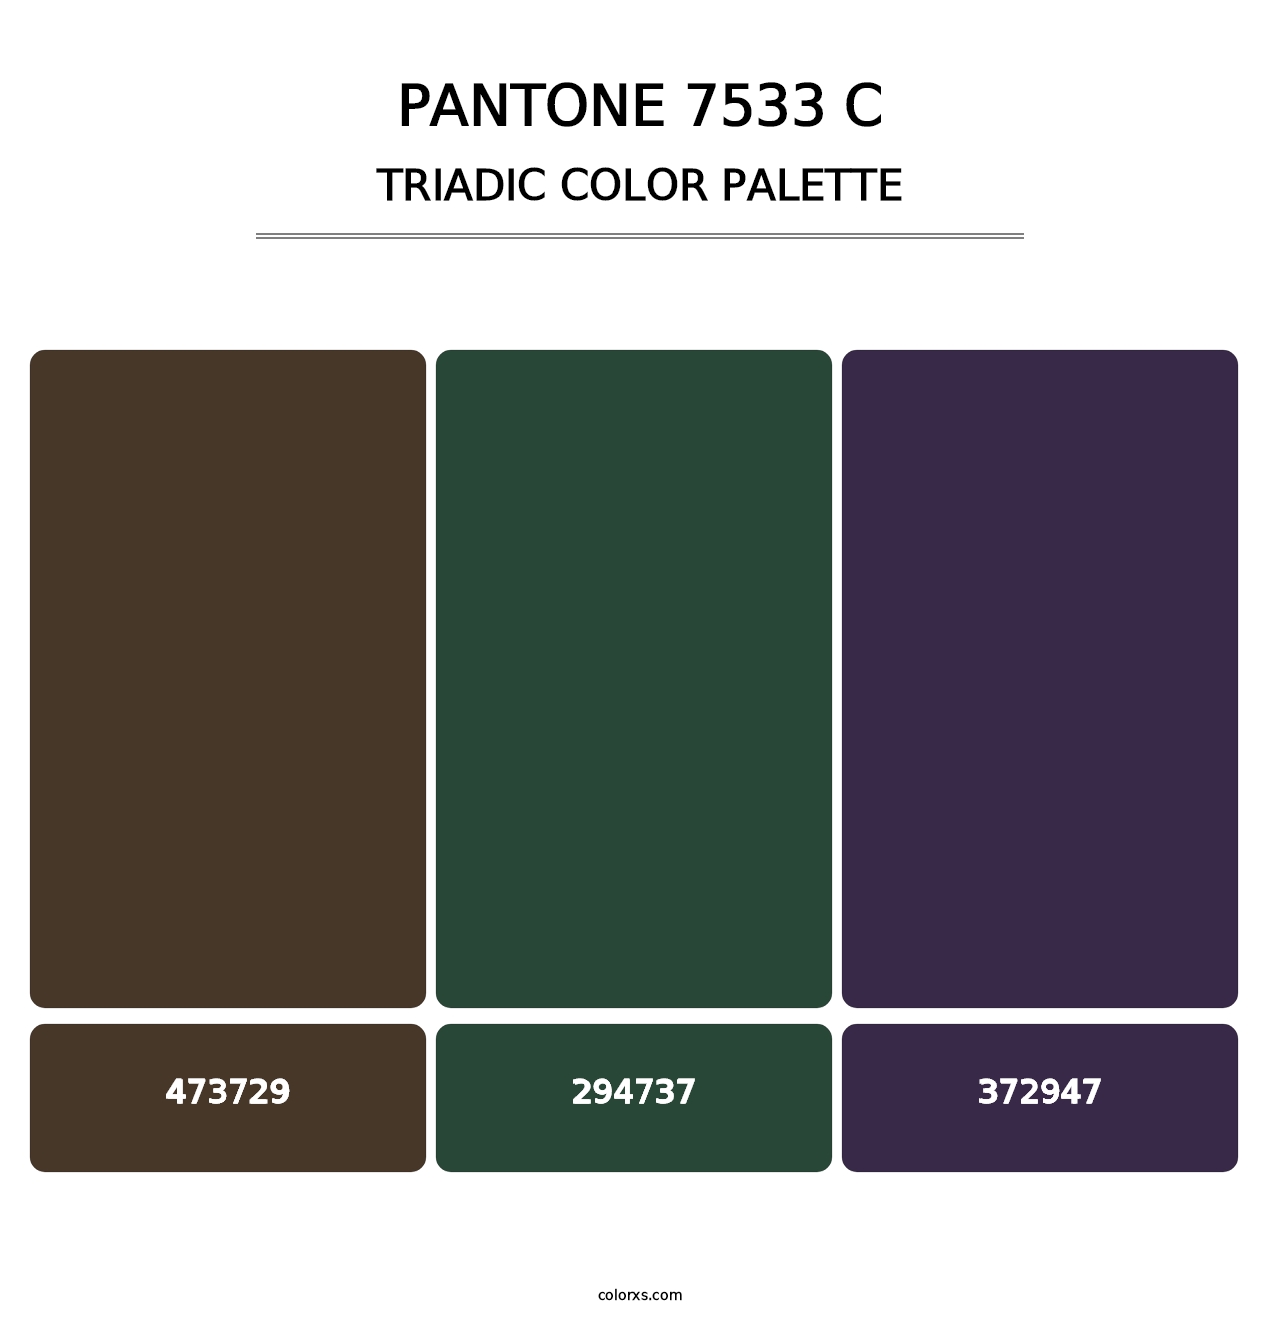 PANTONE 7533 C - Triadic Color Palette